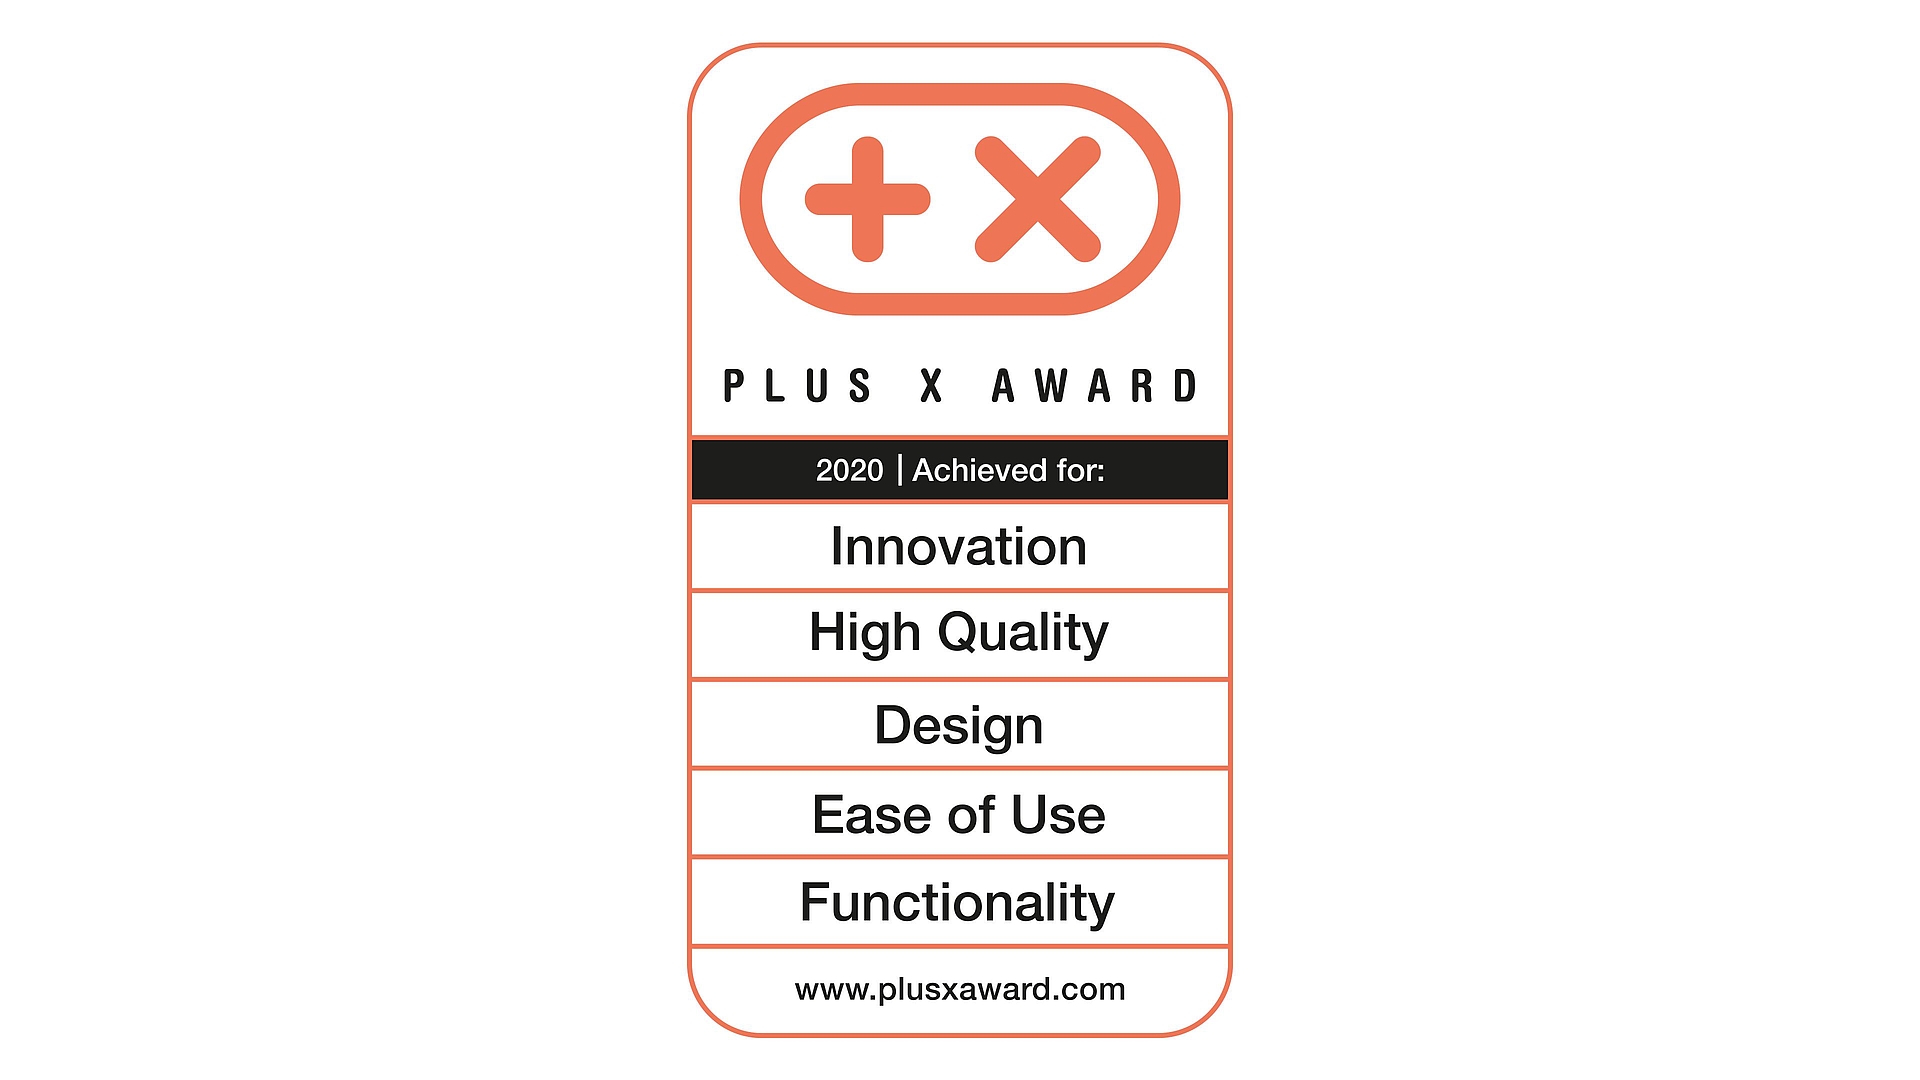 Award_Plus_X_Award_2020_EN_thumb.jpg